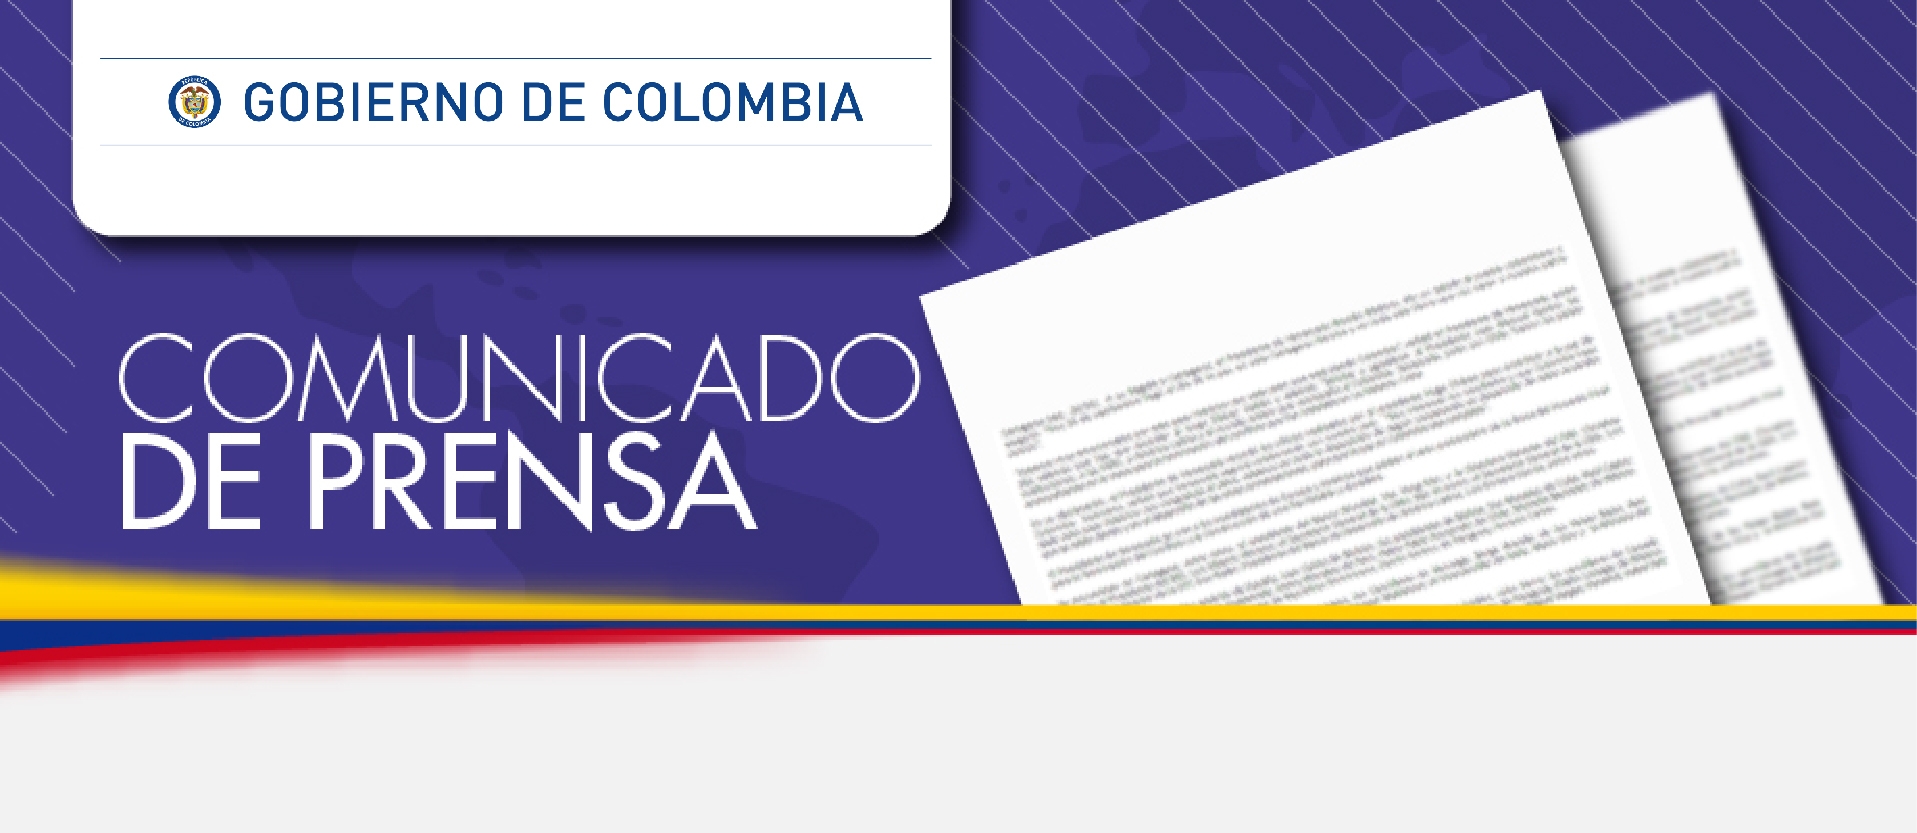 Comunicado del Ministerio de Relaciones Exteriores de Colombia sobre el lanzamiento de un misil balístico por parte de la República Popular Democrática de Corea (RPDC)